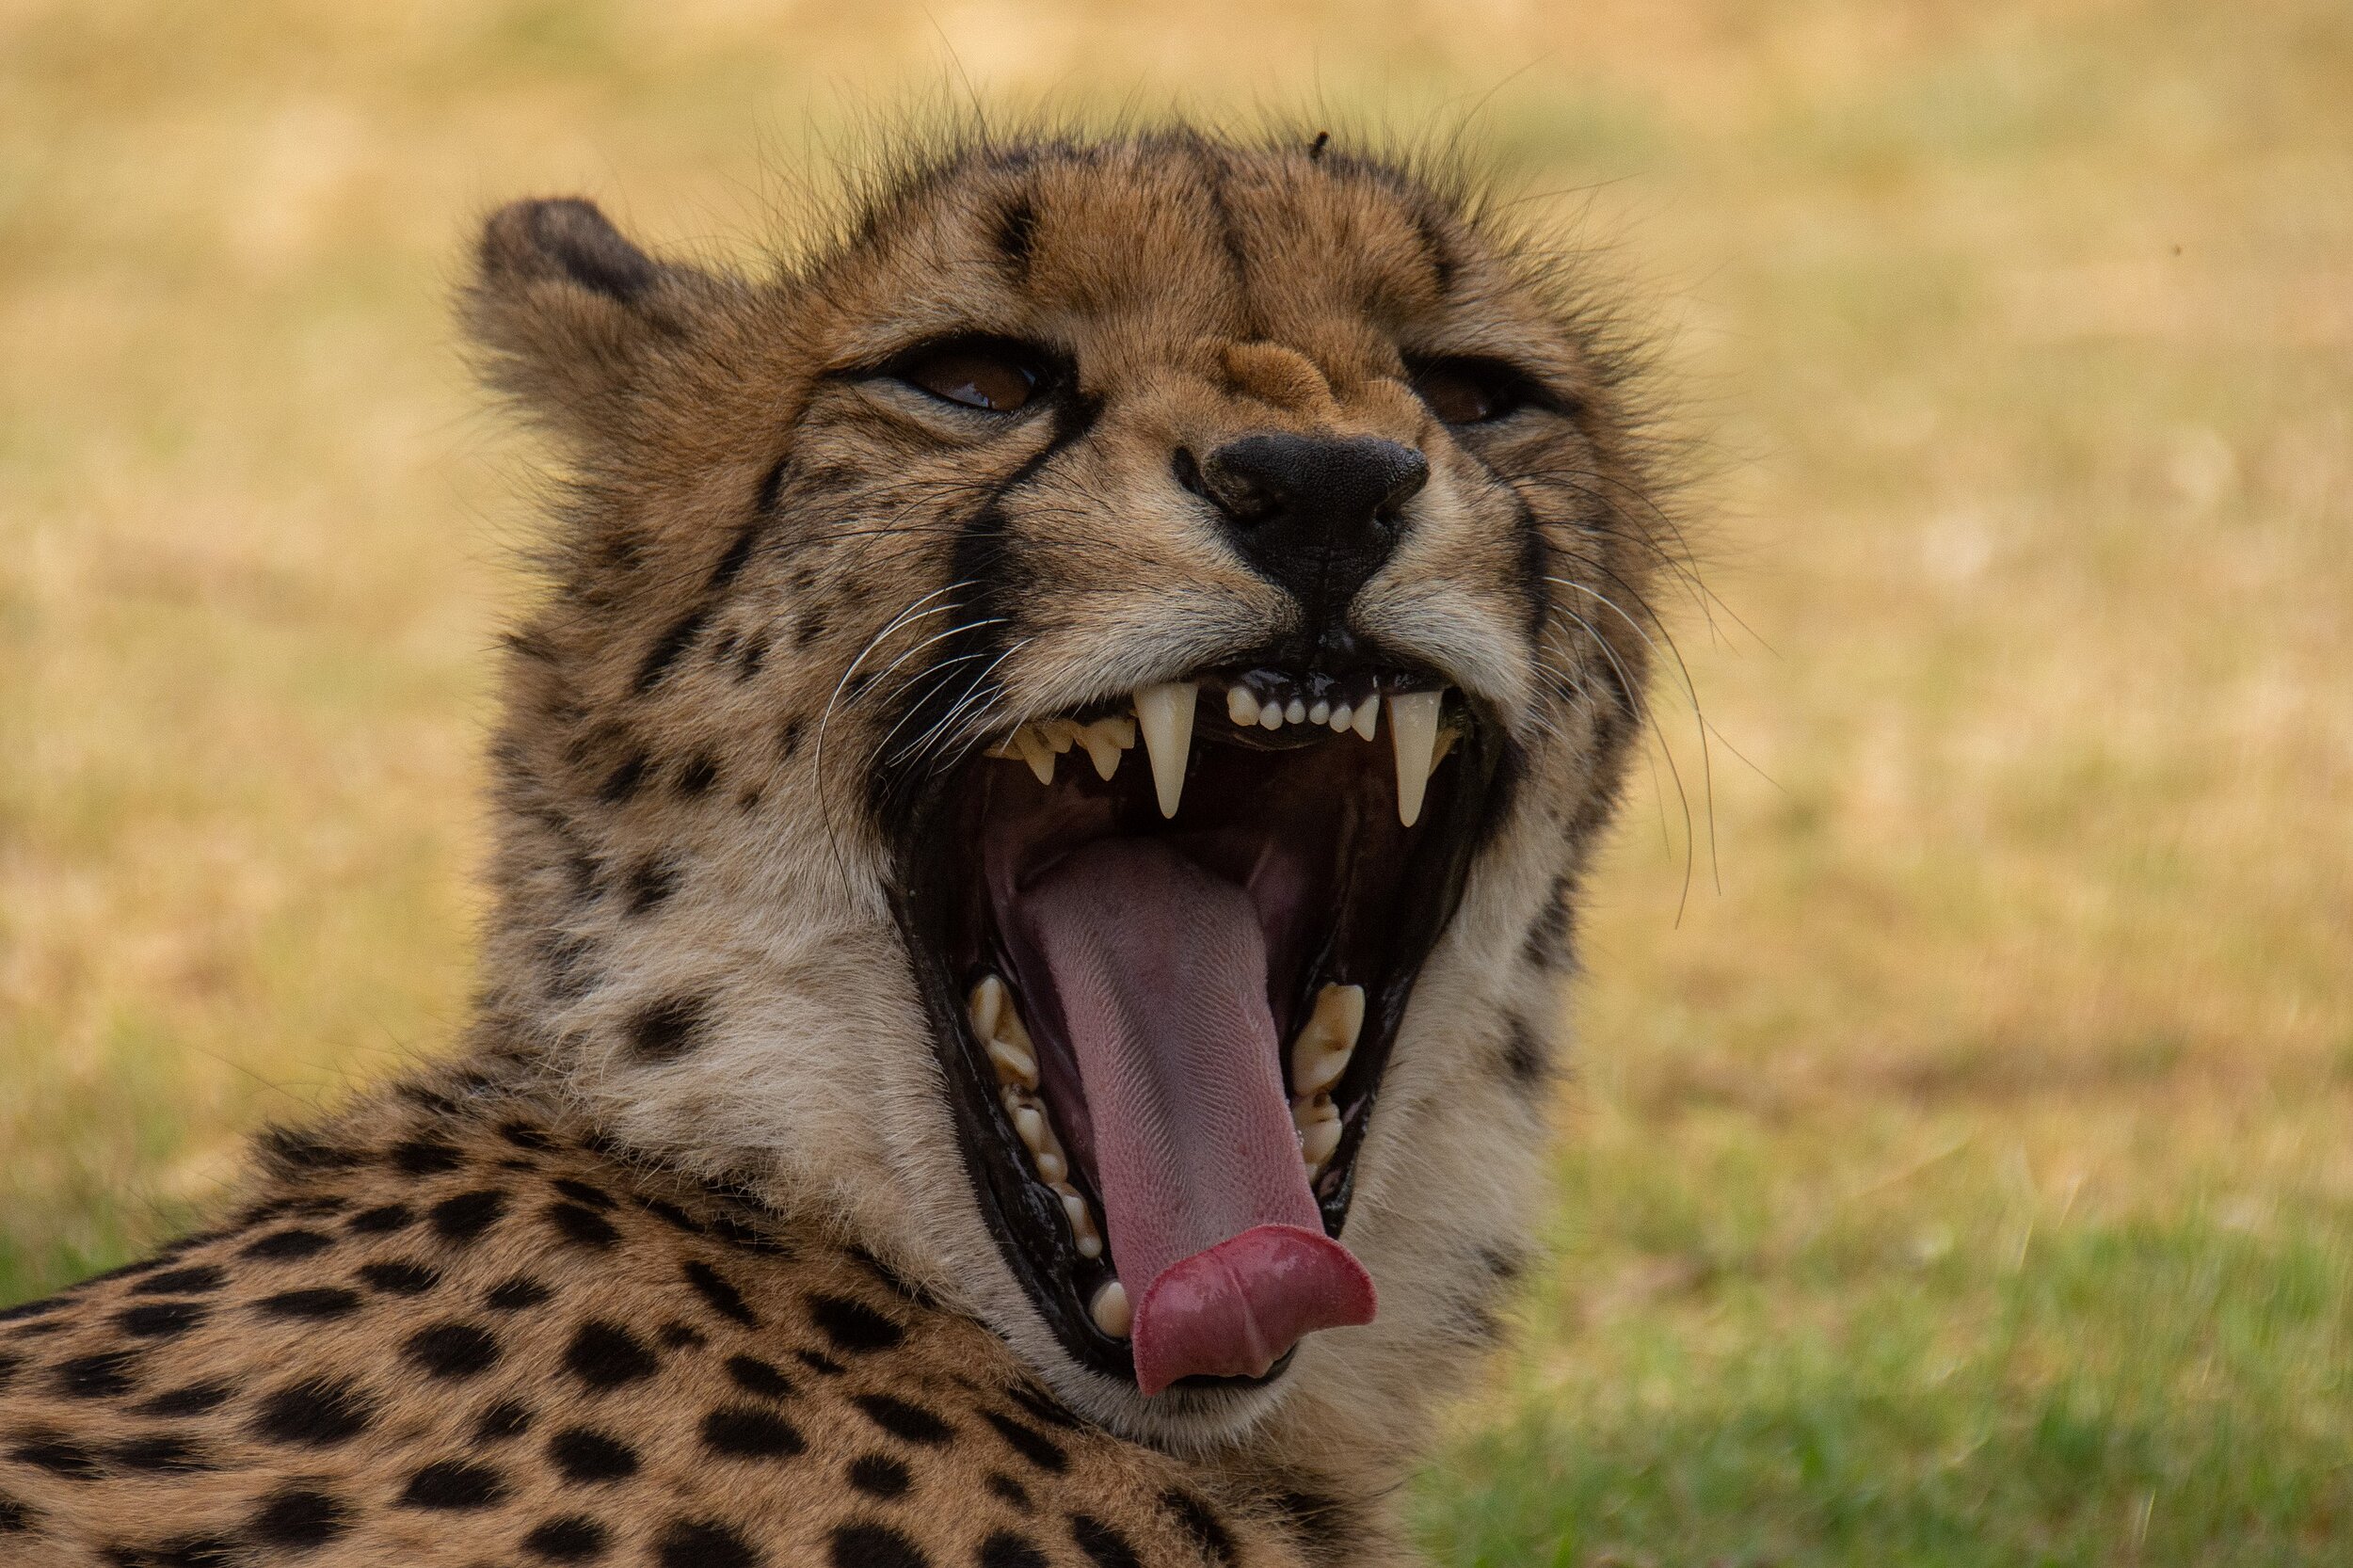 Big ‘ol Cheetah Teeth